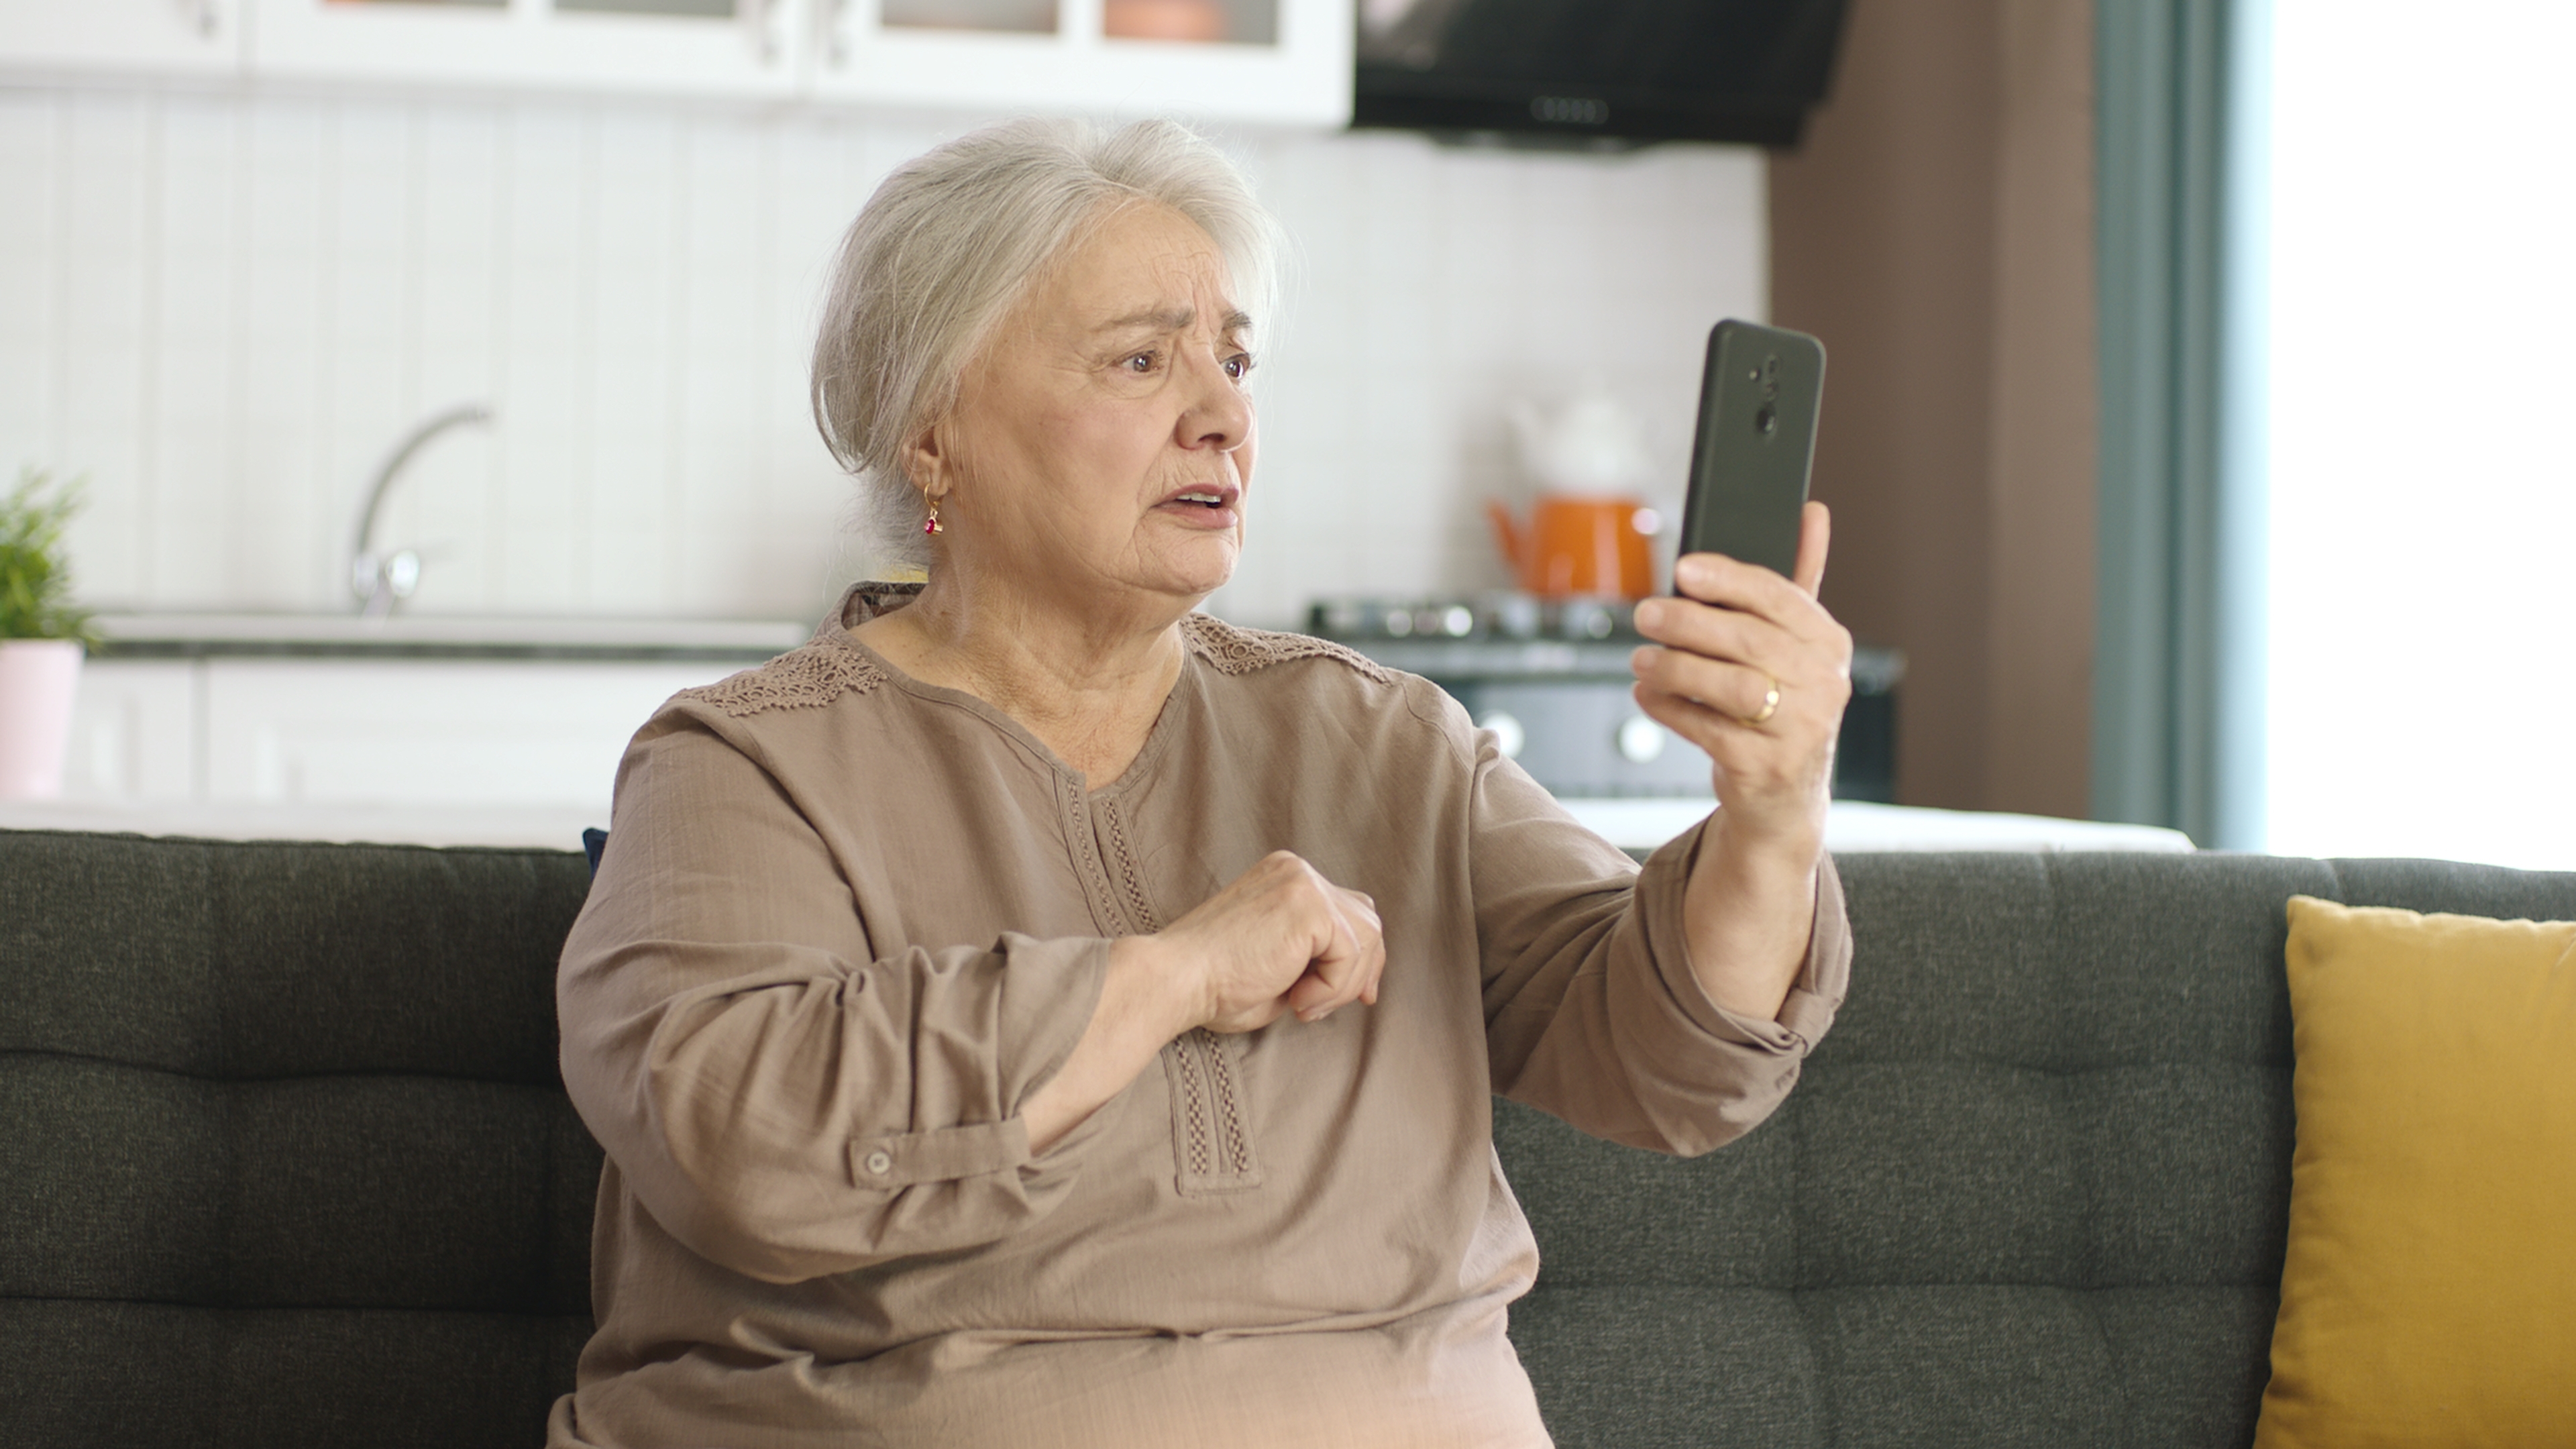 An elderly woman on a video call | Source: Shutterstock